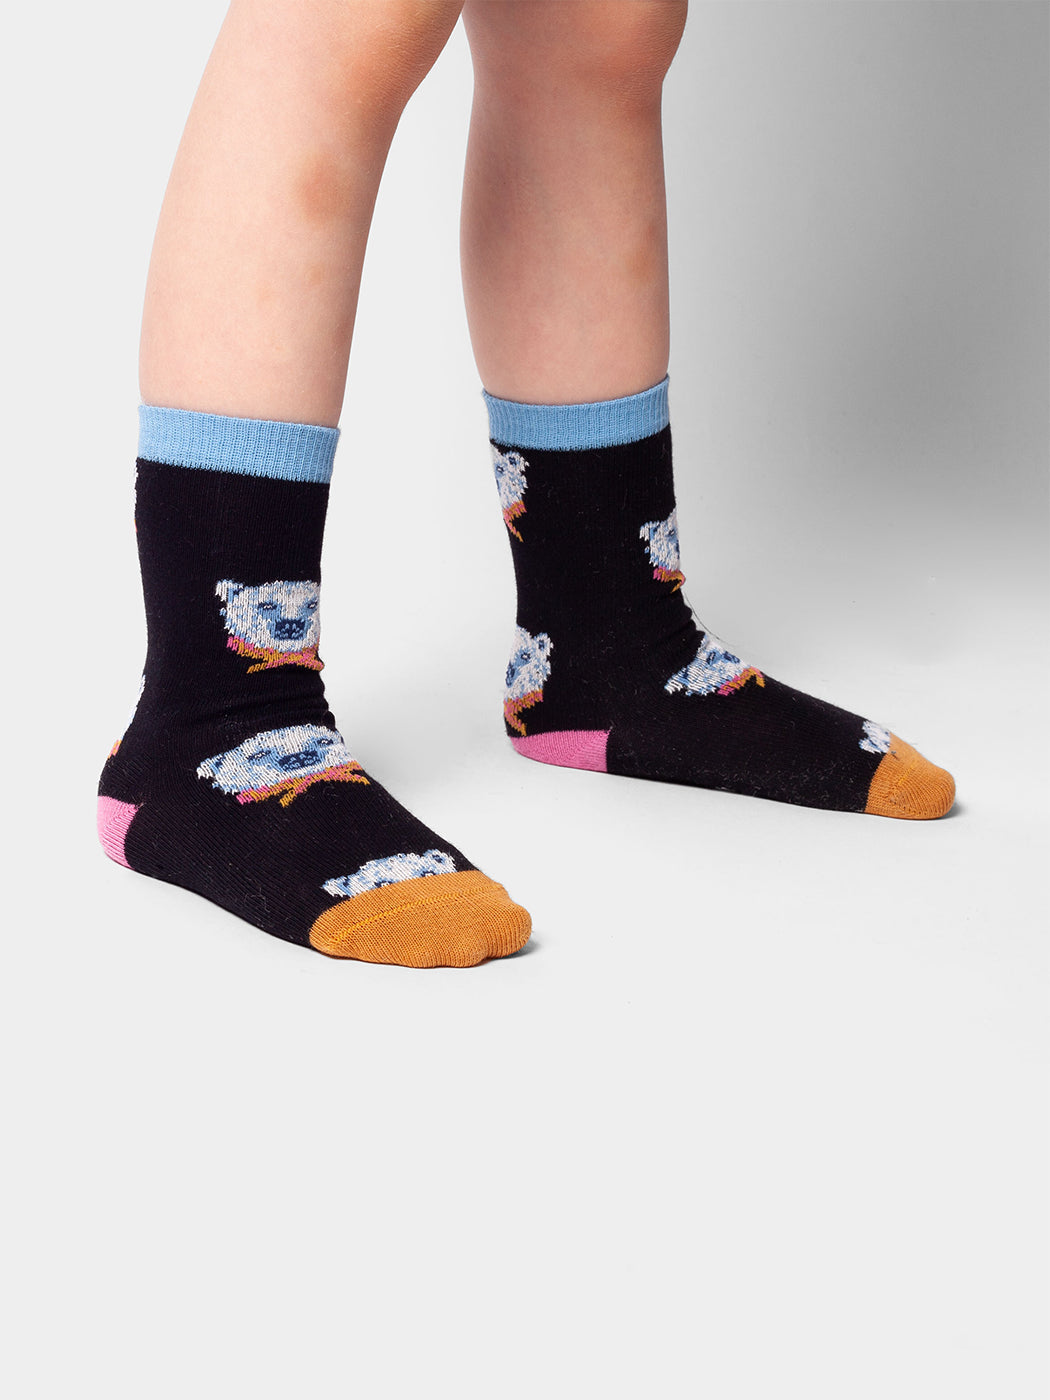 Dilly socks calcetines niñxs